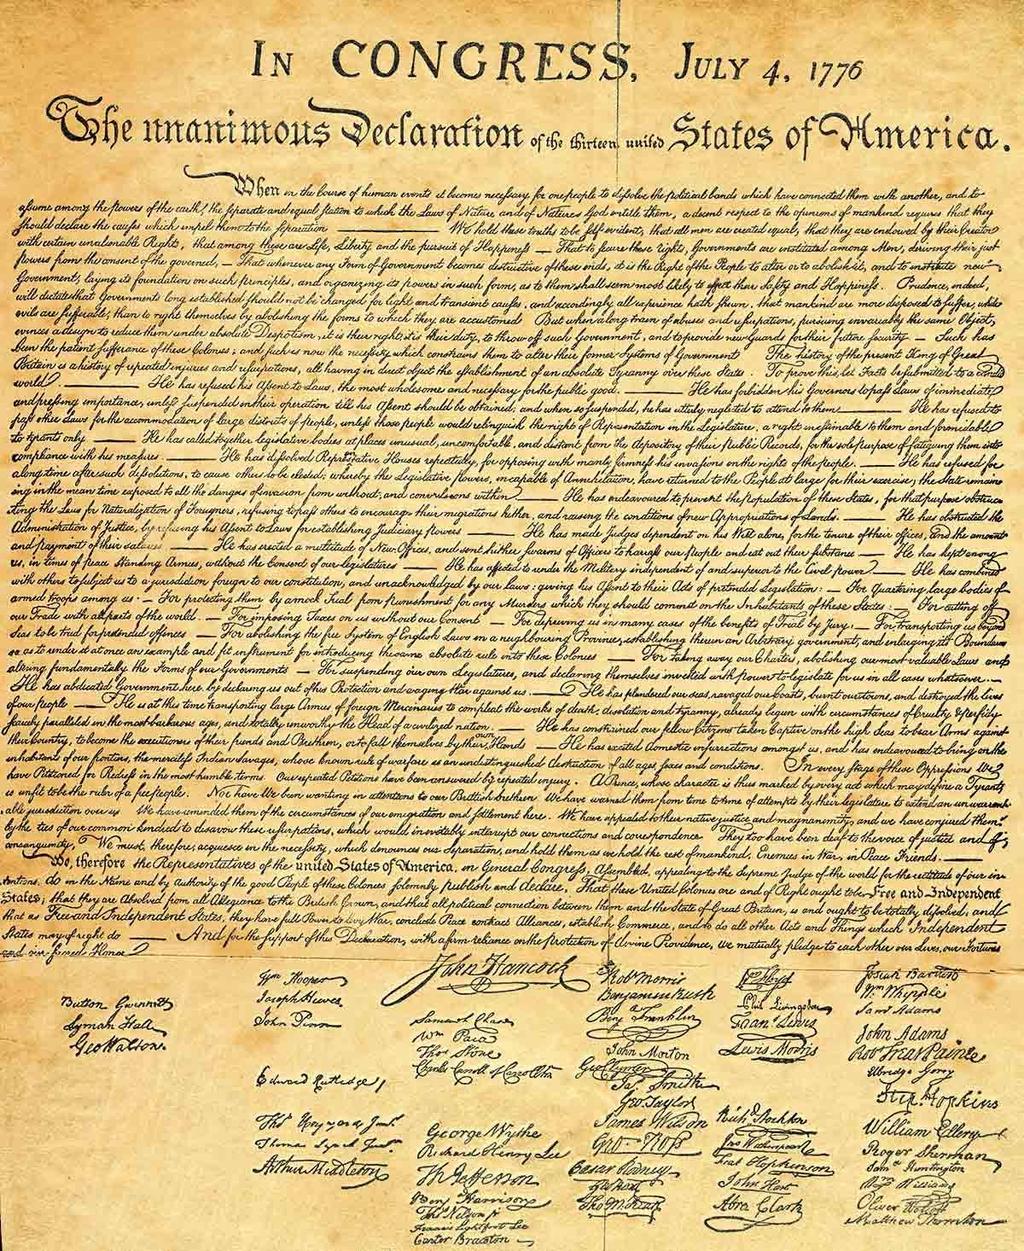 La Declaración de Independencia Fue firmada por los representantes de las trece colonias de Norteamérica.